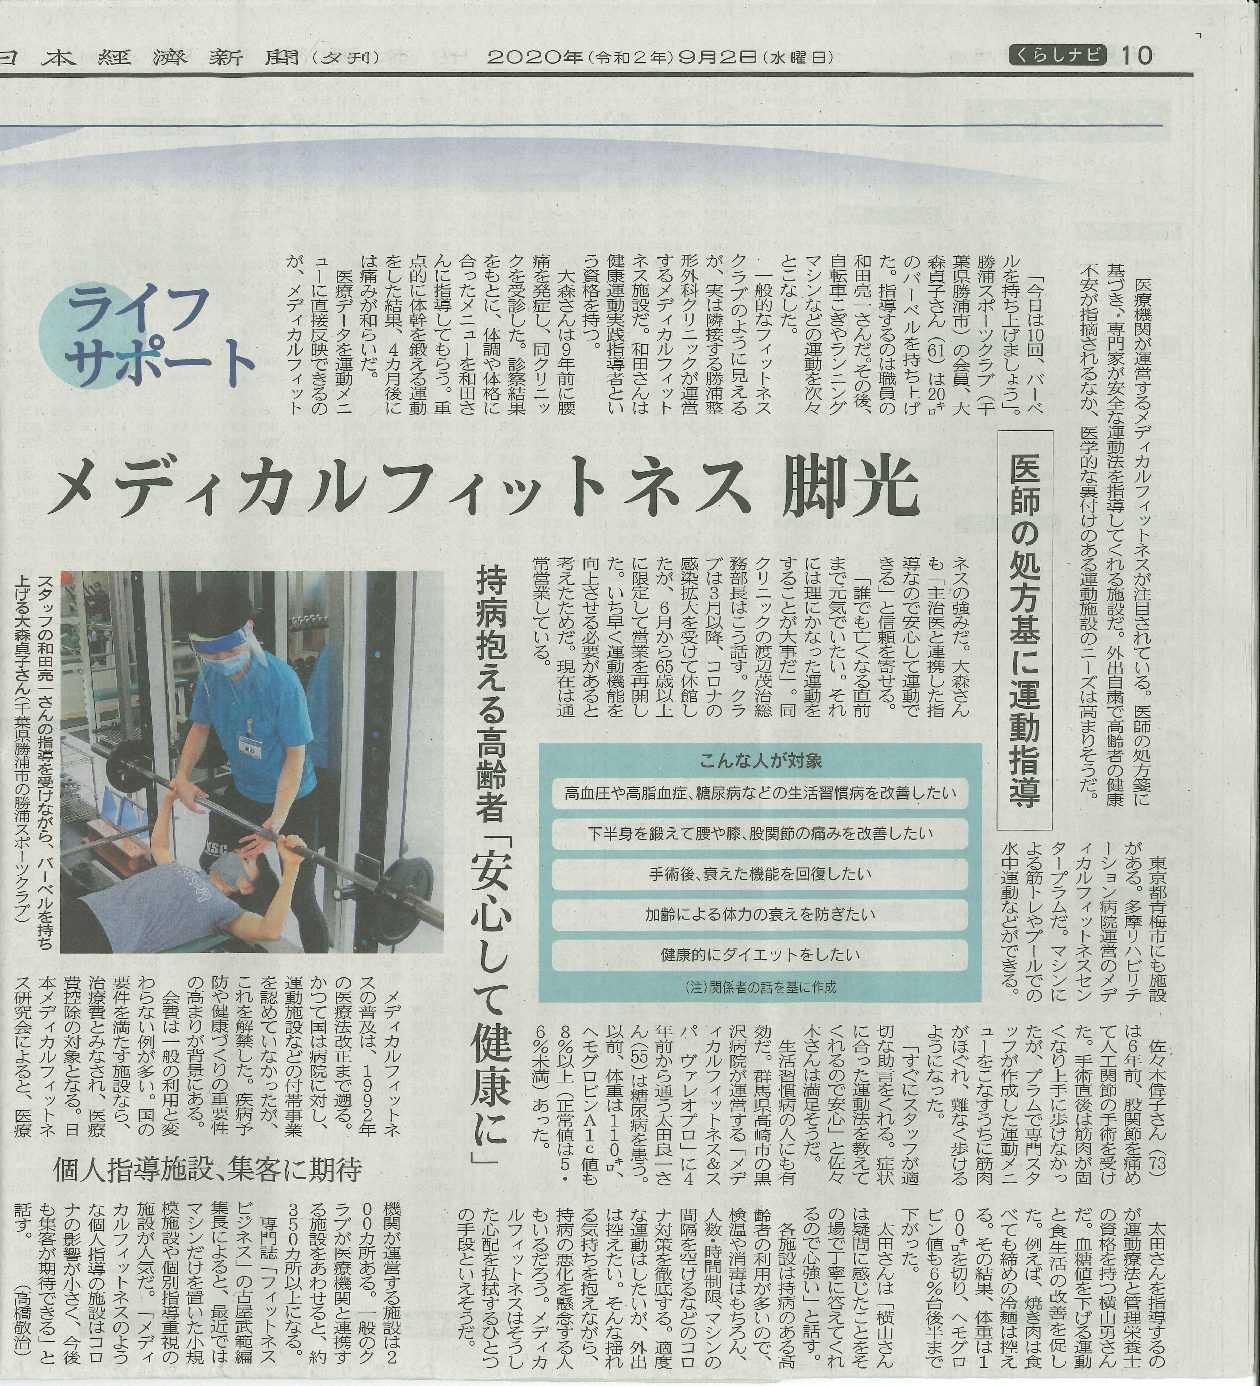 健康増進施設・指定運動療法施設に関する記事が日本経済新聞に掲載されました